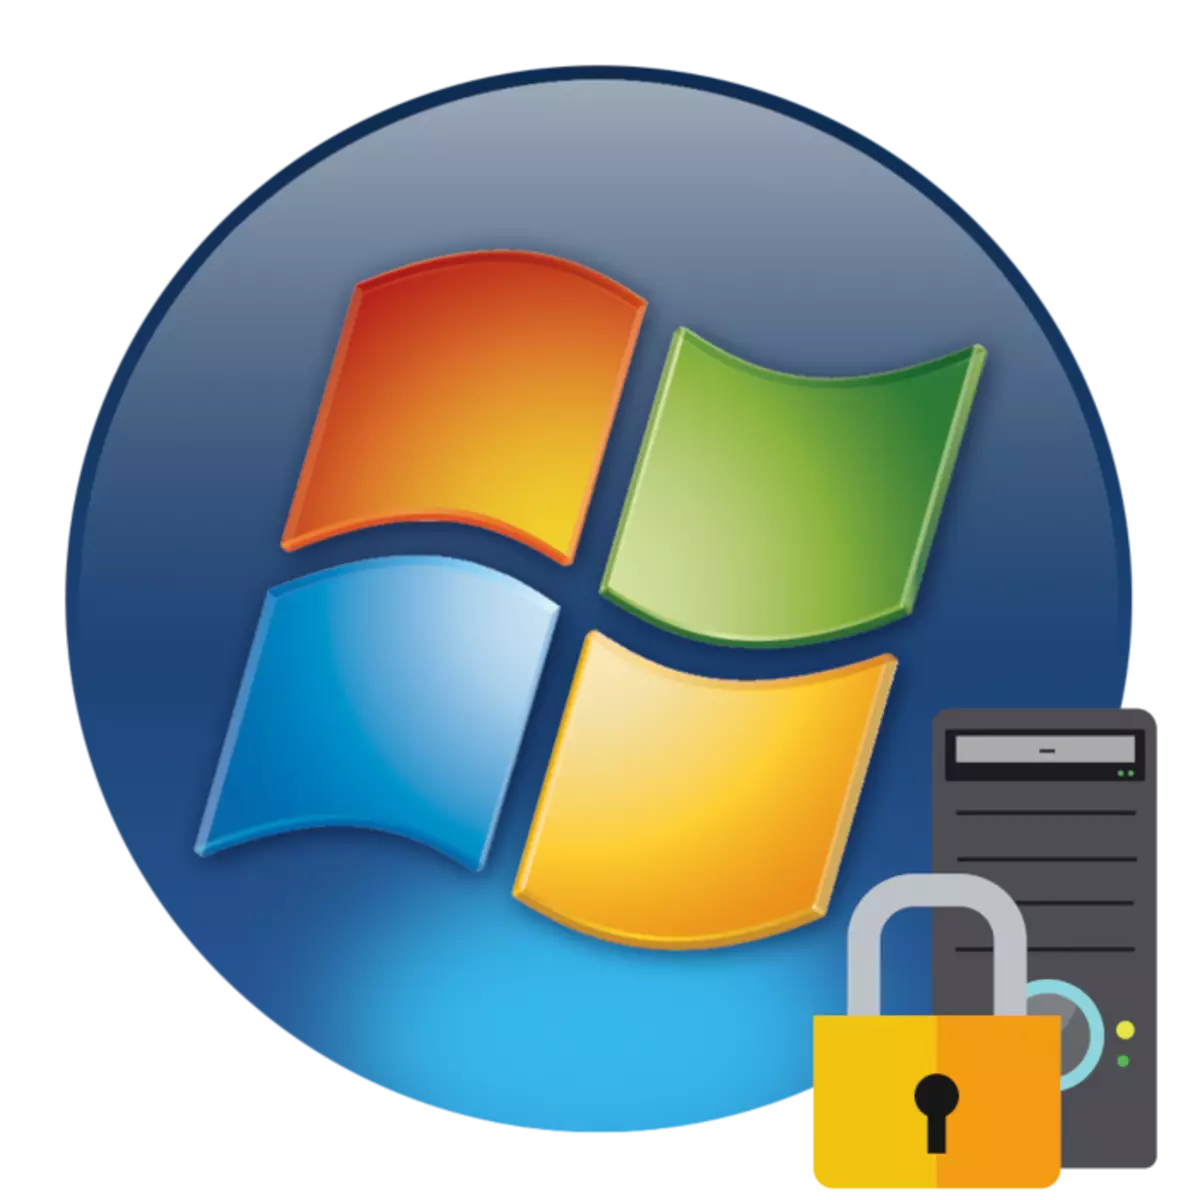 Slik åpner du en lokal sikkerhetspolicy i Windows 7